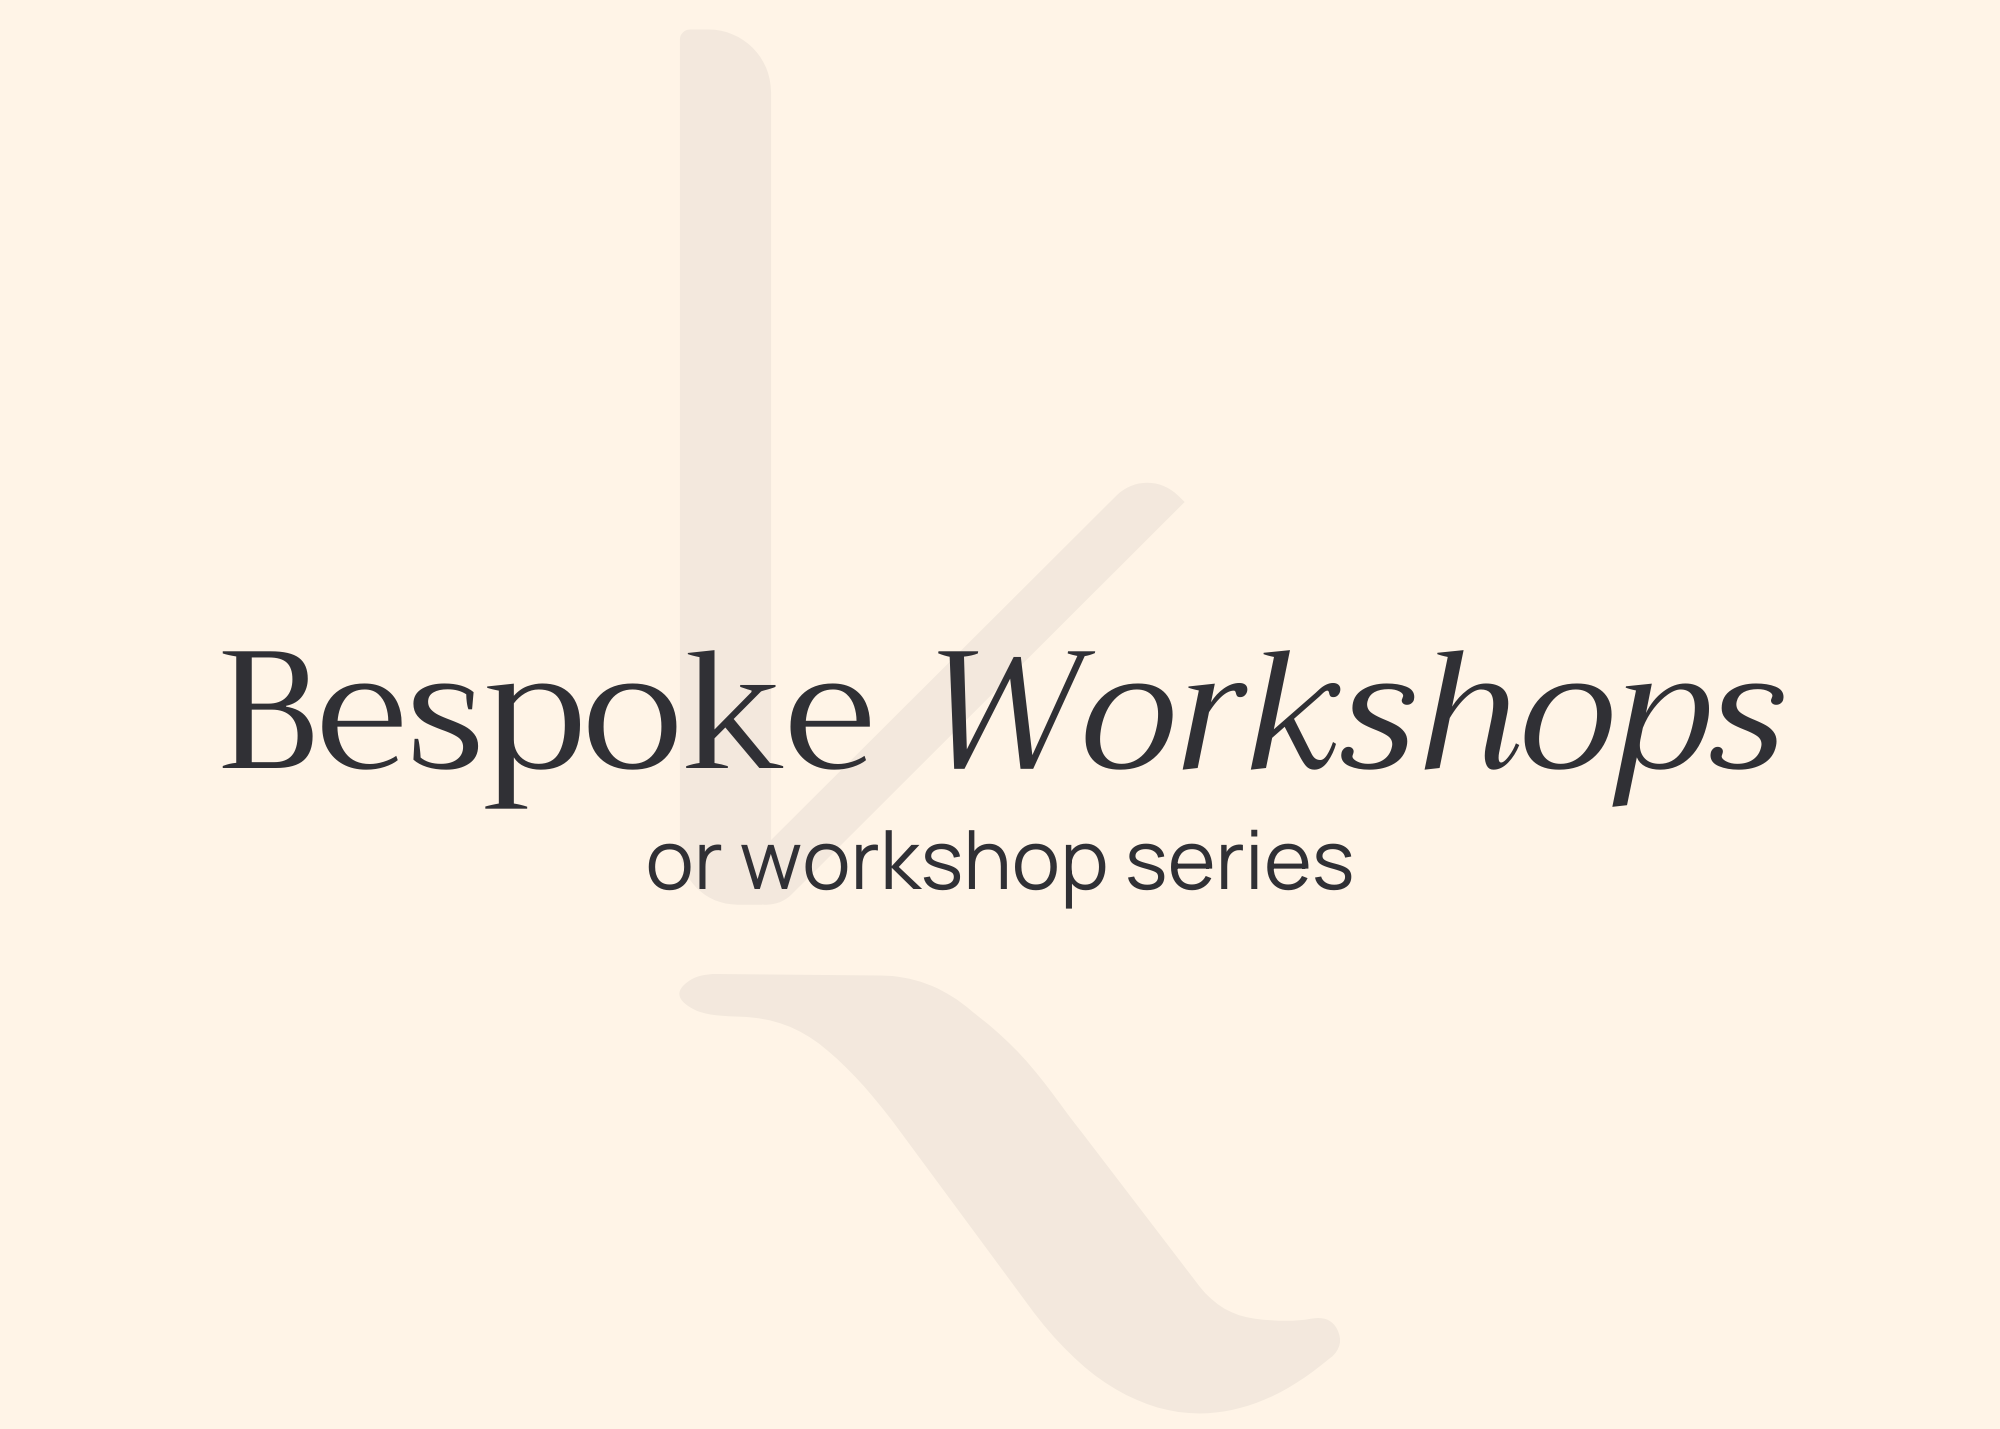 Bespoke workshops or workshop series